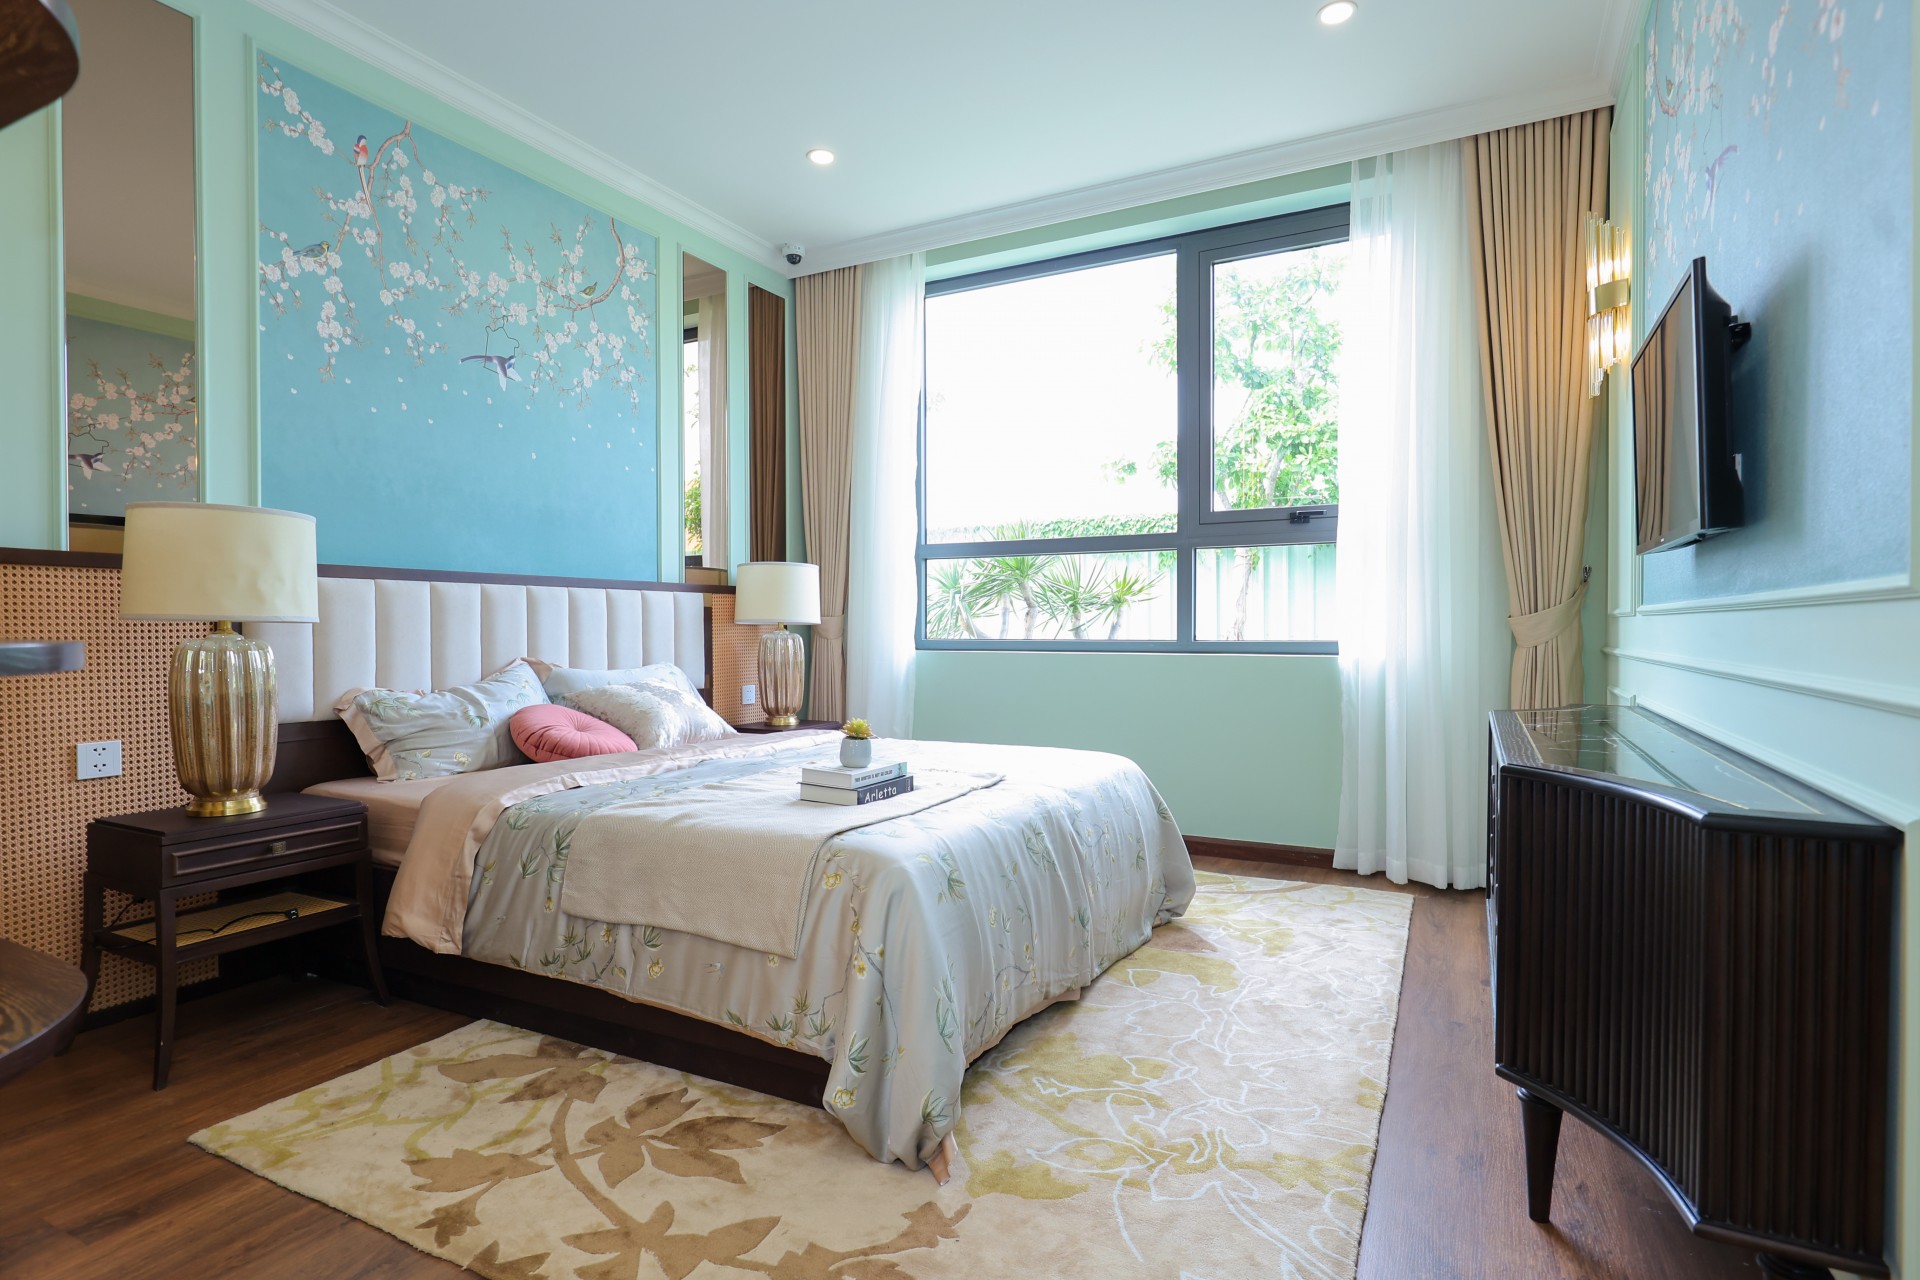 Ngắm cận cảnh từng chi tiết trong căn hộ mẫu Hanoi Melody Residences